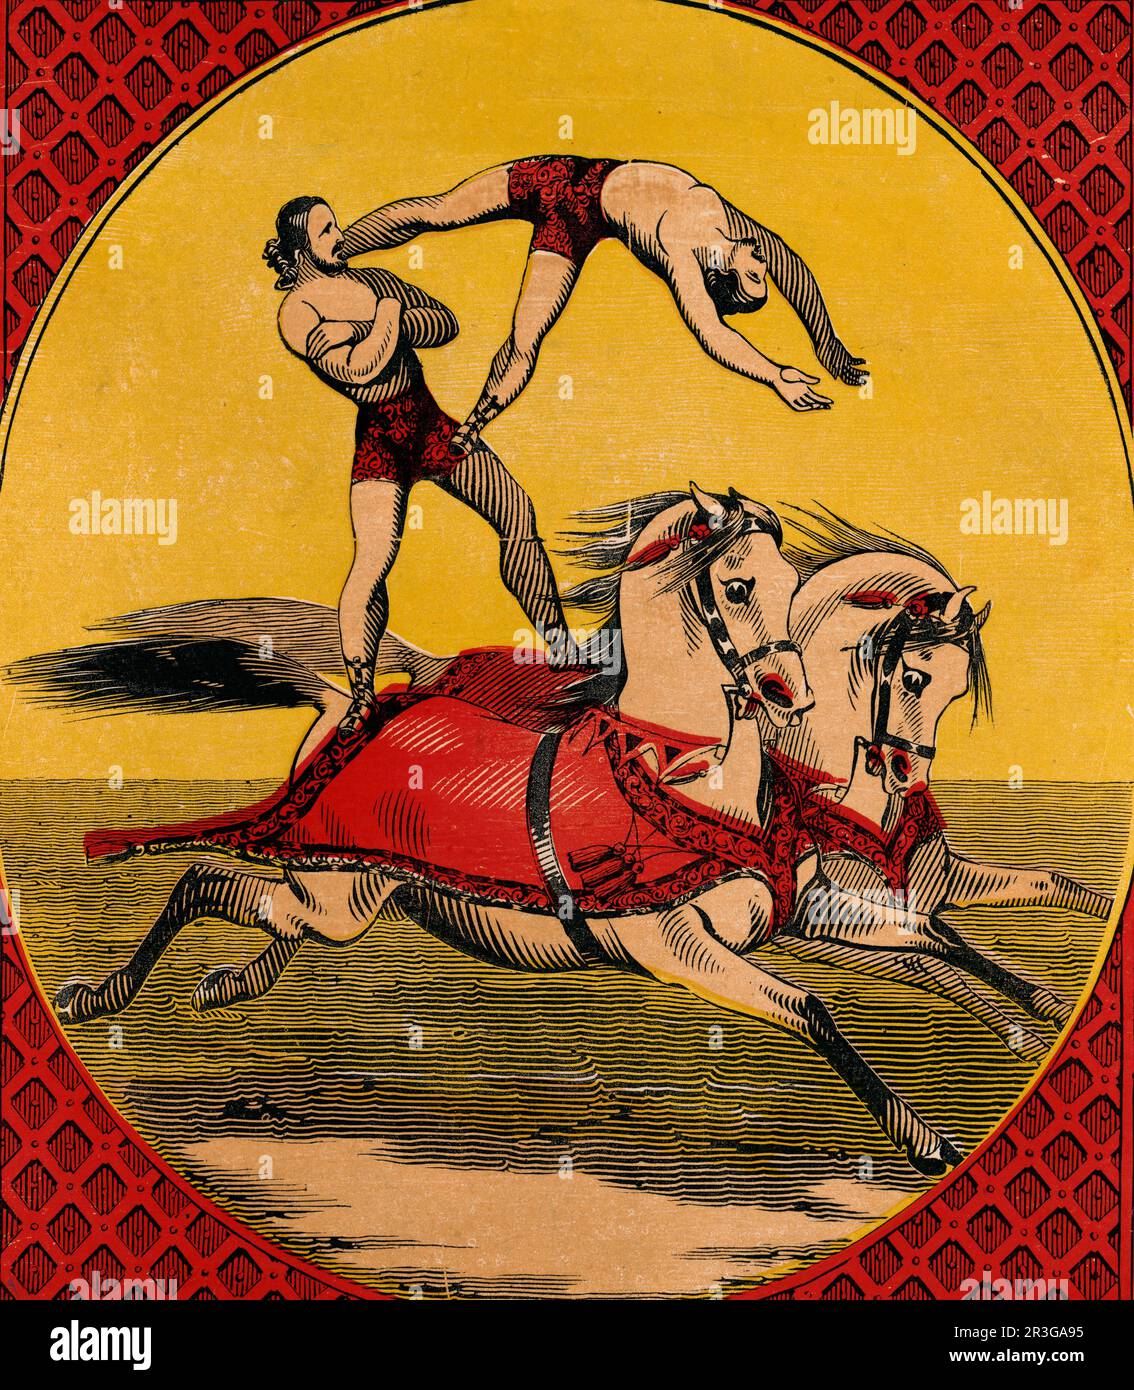 Stampa vintage di due piloti bareback maschili che perfezionano acrobazie bilanciando le spalle di due cavalli. Foto Stock